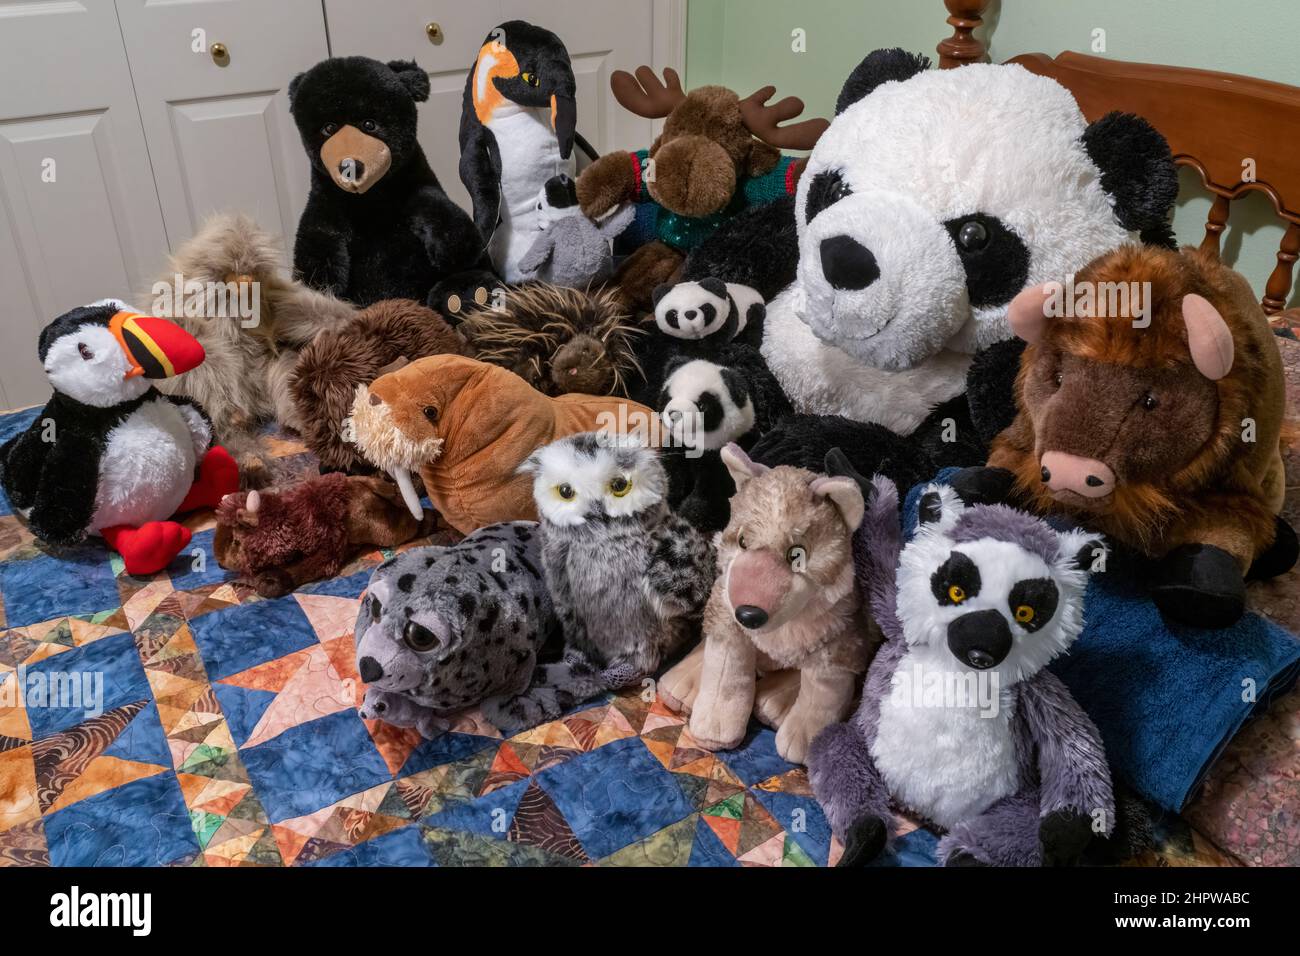 Ritratto di un gruppo di animali imbalsamati su un letto. Foto Stock